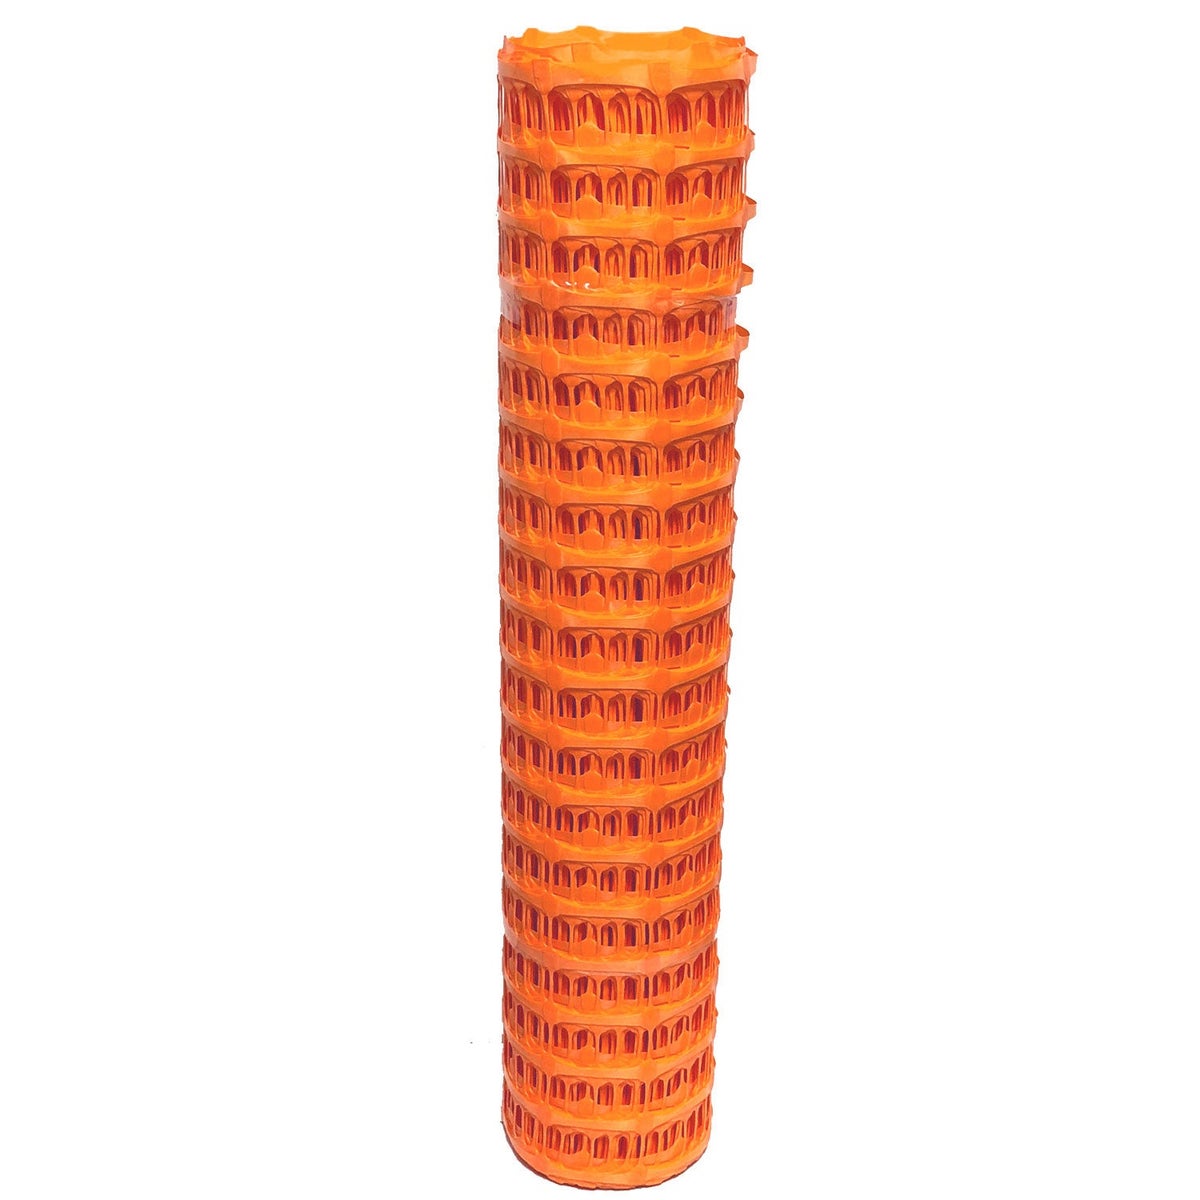 Fangzaun UvV SOLIDO Warnzaun Absperrnetz Bauzaun Kunststoff Rolle 50 x 1m | 7,5kg / orange